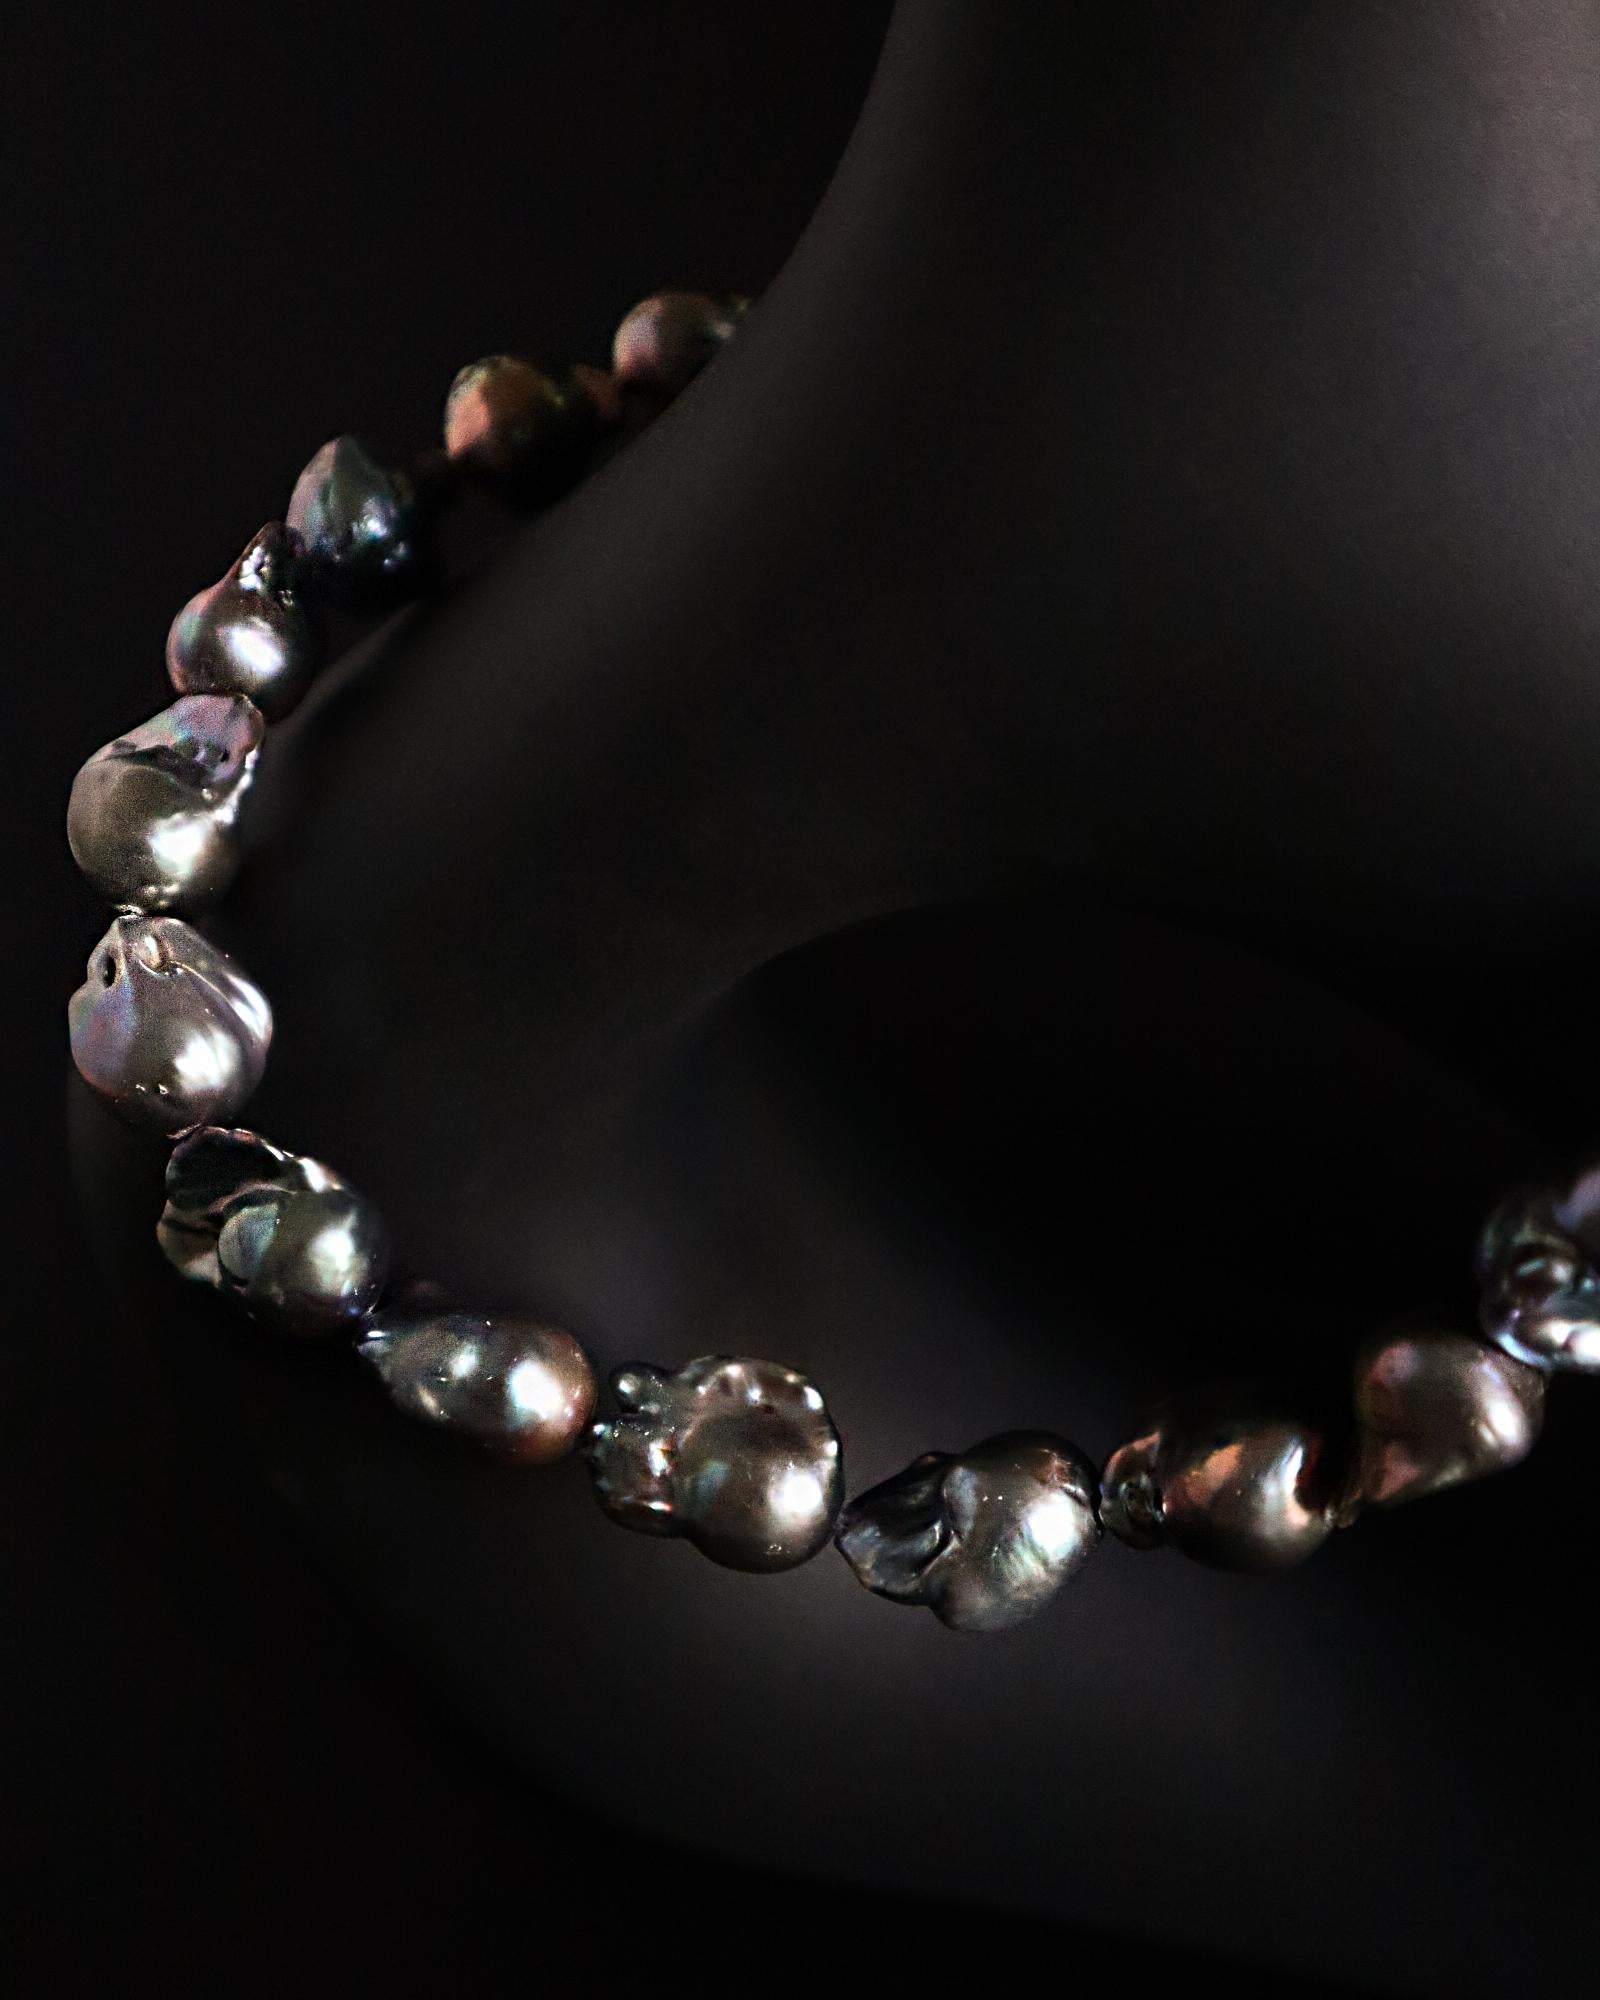 Le collier le plus sophistiqué avec de belles perles baroques grises irisées et asymétriques. Magnifique seul ou en combinaison avec d'autres colliers.

- Sur commande 

- Option de  Cols de 16